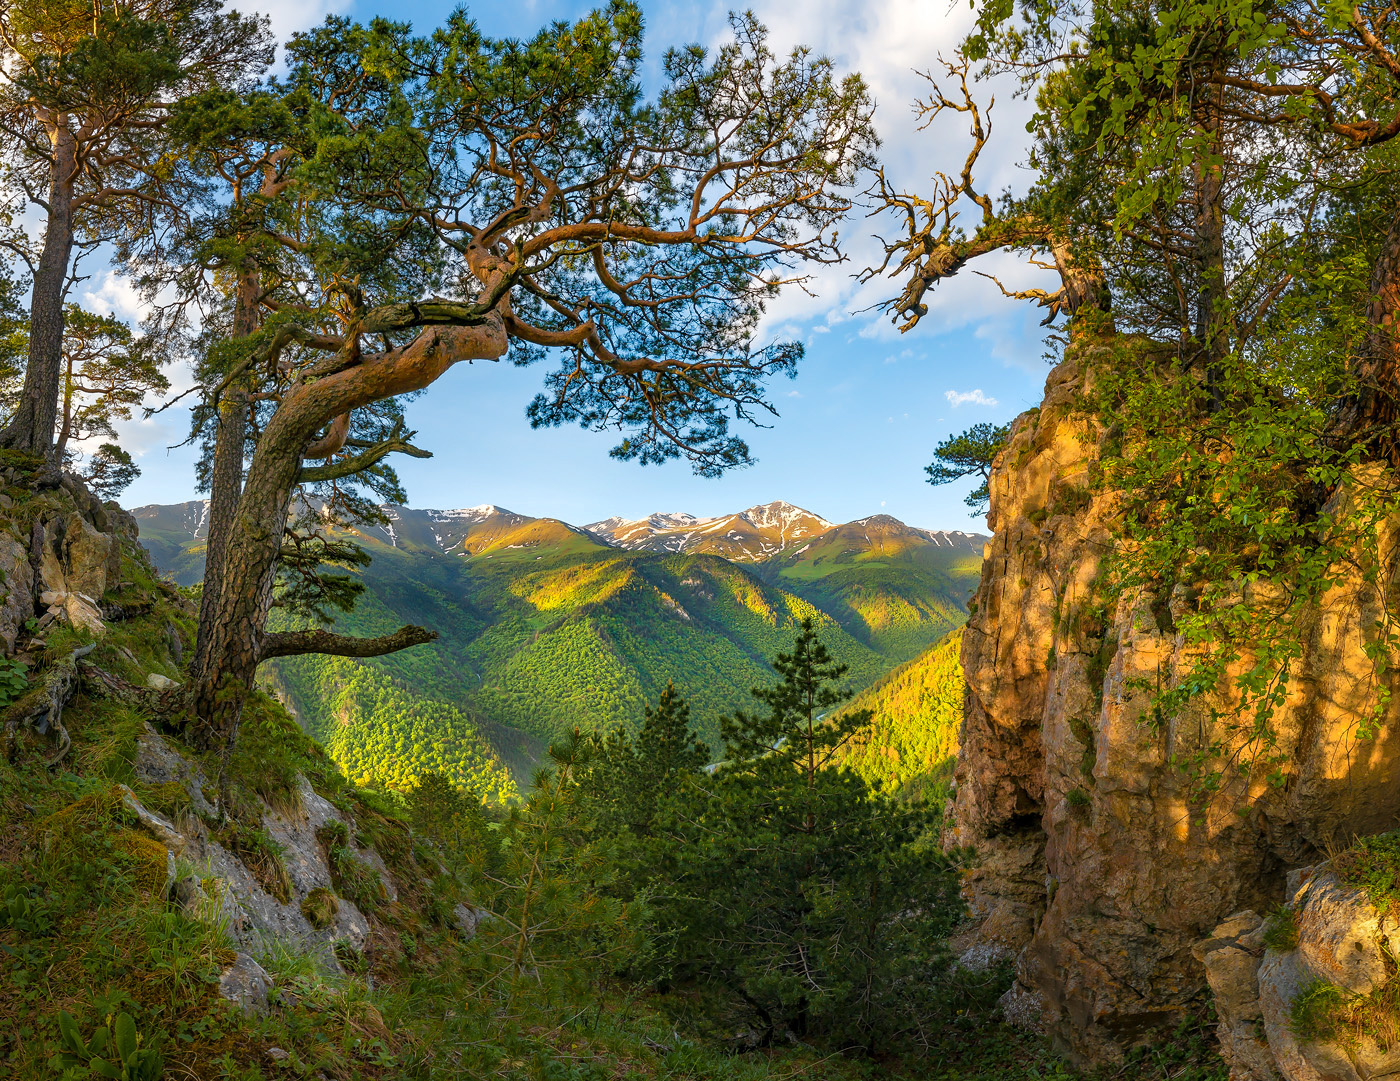 Обрамление Северный Кавказ Горы гора Архыз хребет горное сосна сосны лес деревья лесное дерево ствол путешествие скалы